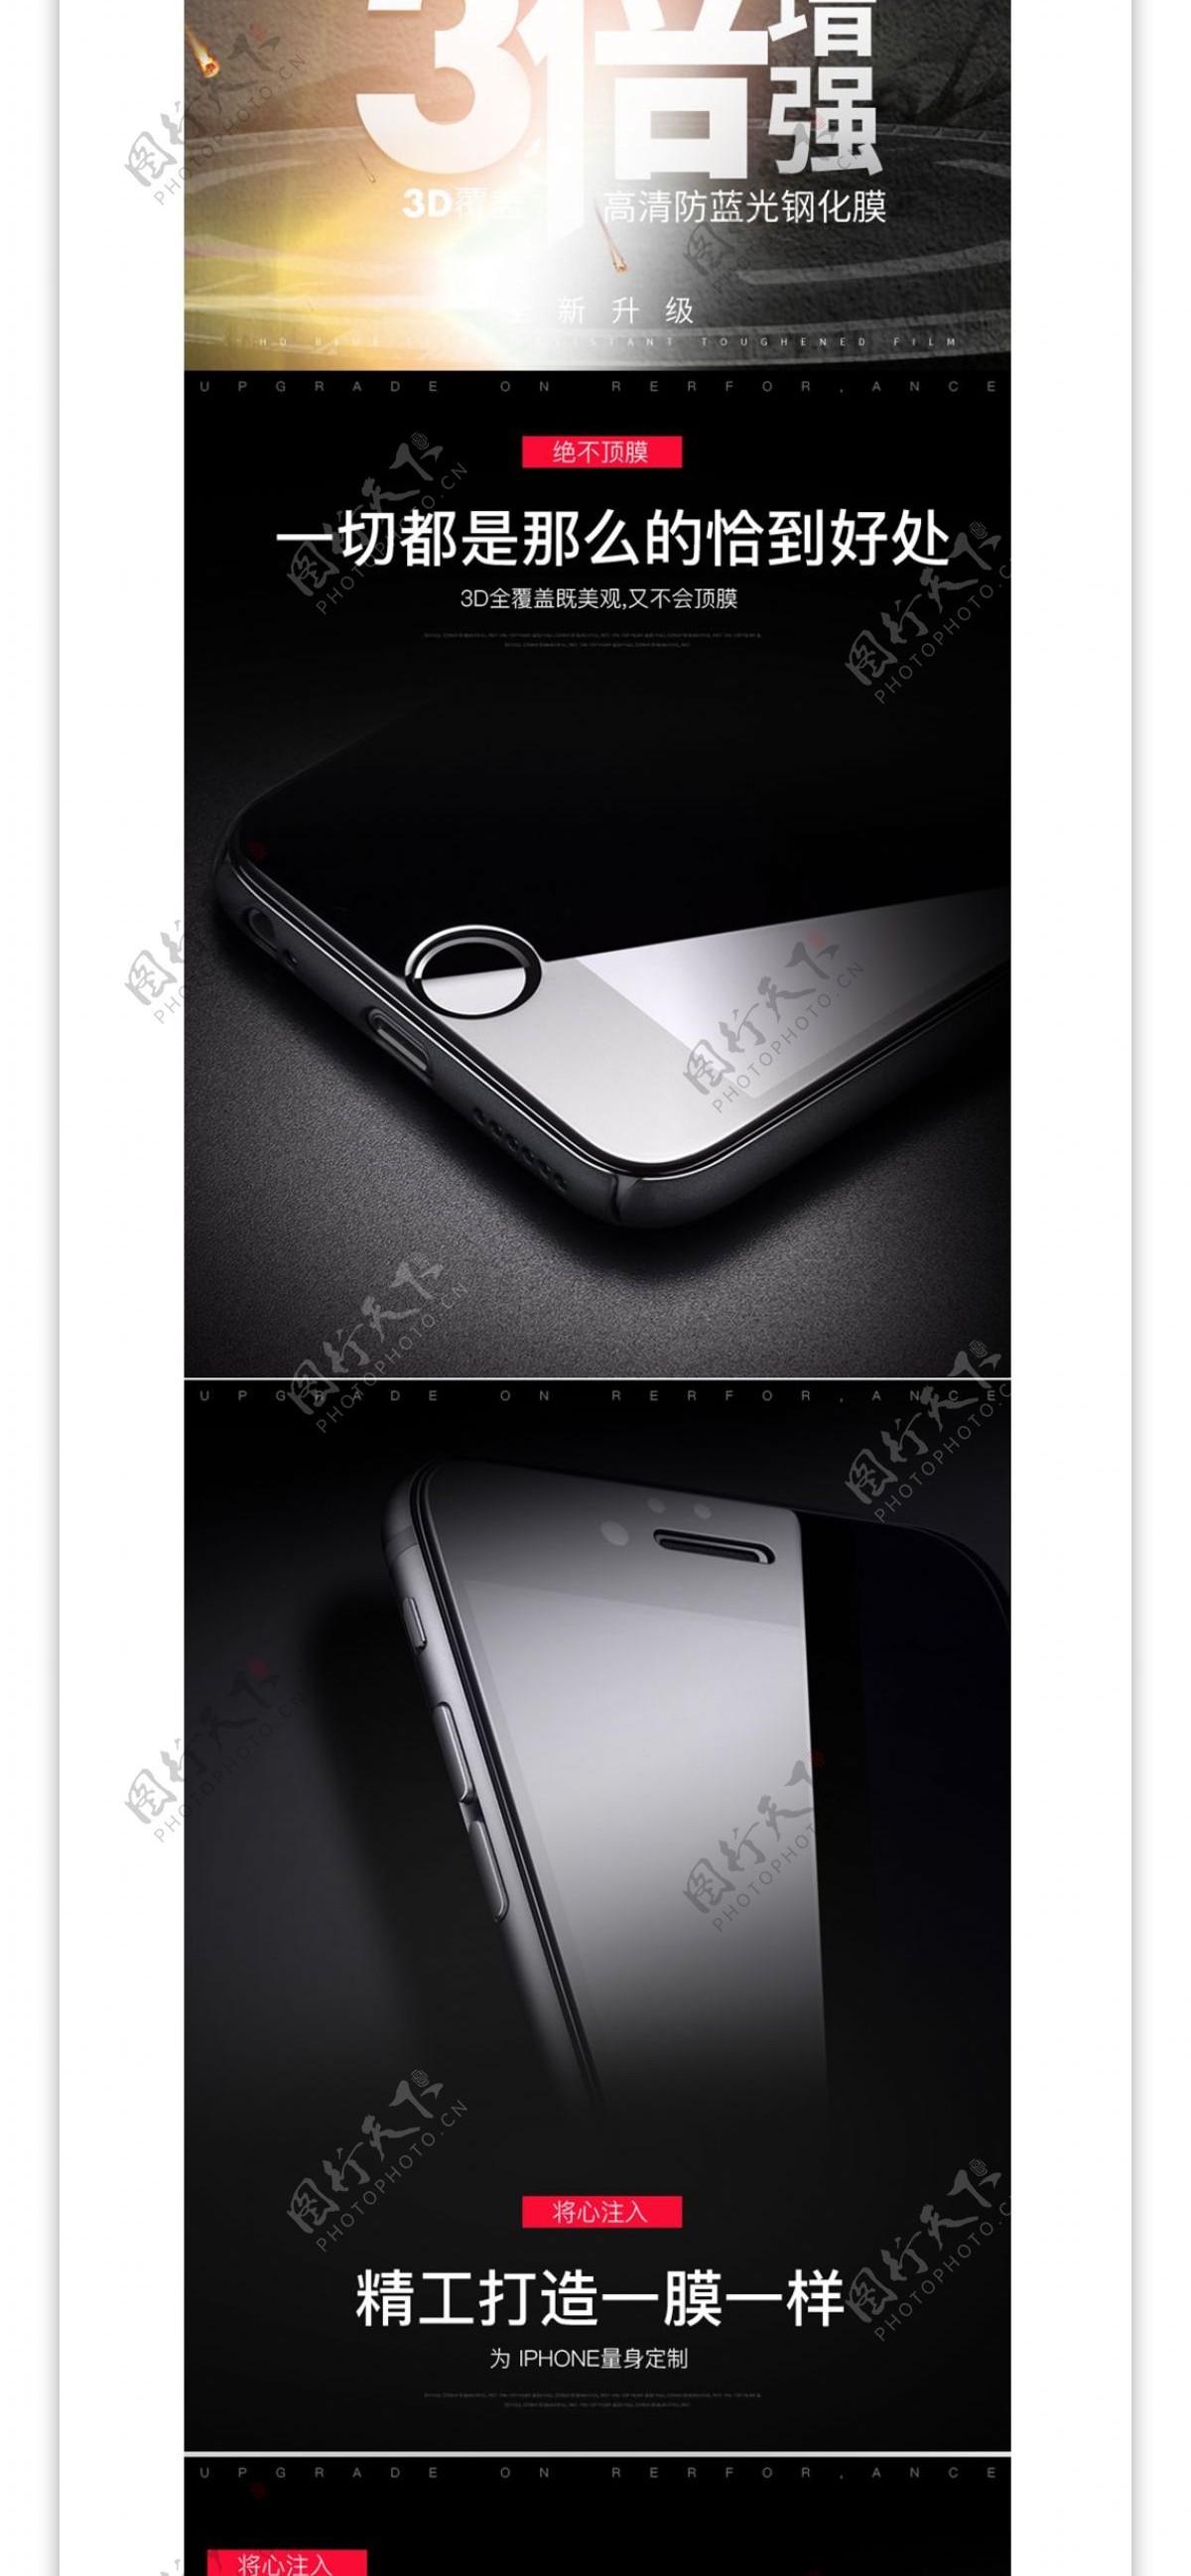 3C数码苹果安卓手机钢化膜活动详情页模版